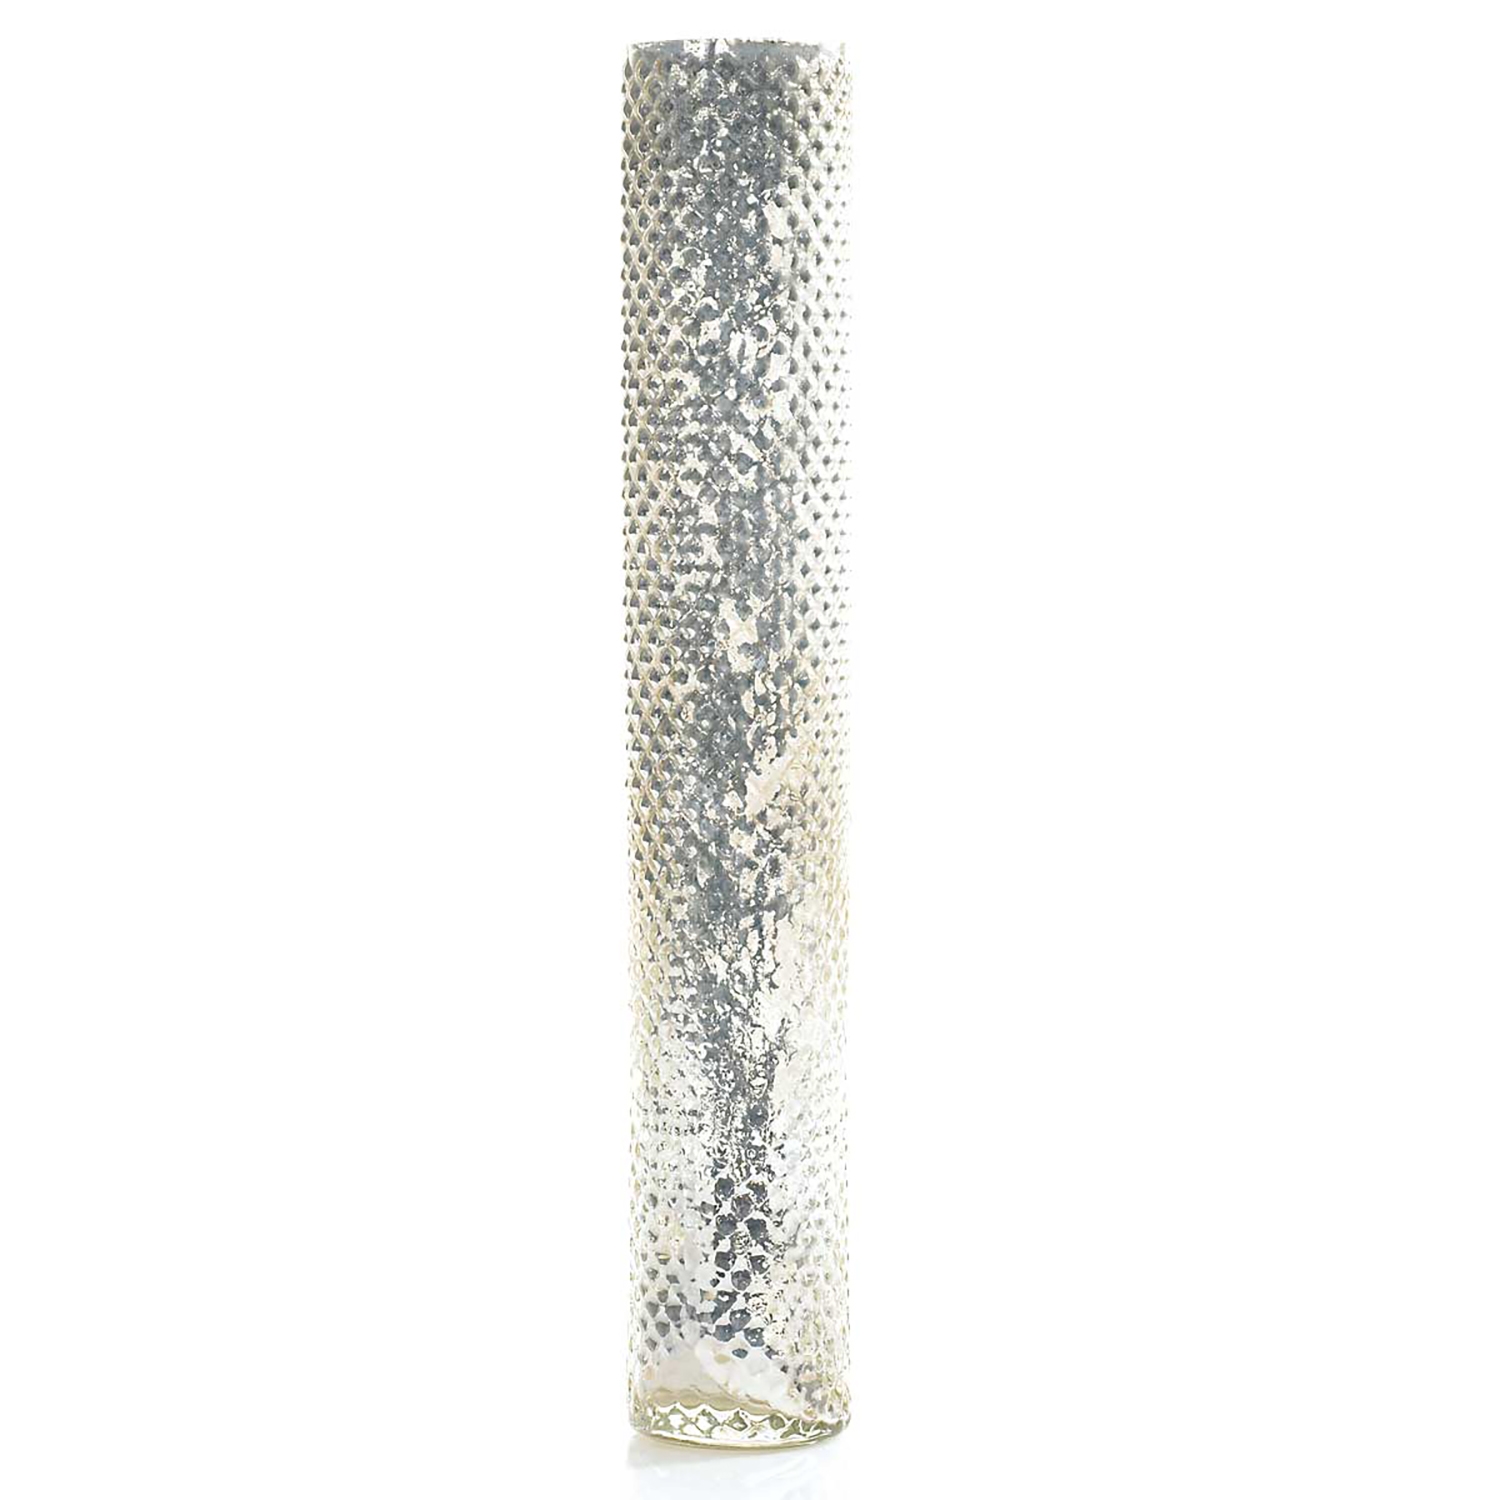 Nordic Vase 2.5" x 15.5"